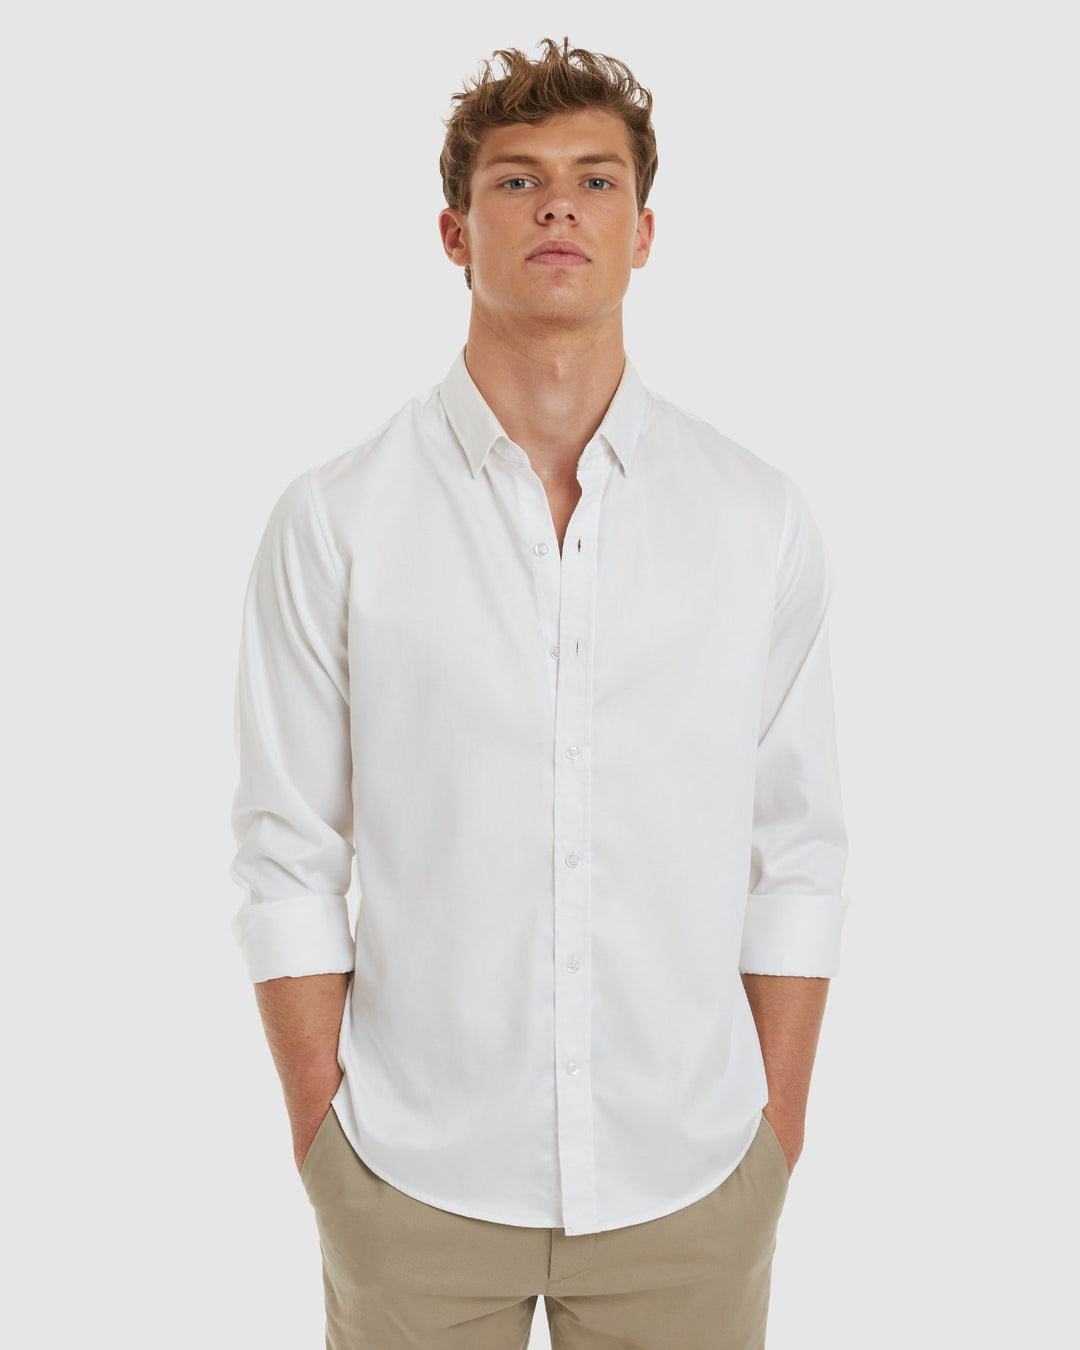 White shirts, Pure cotton shirts